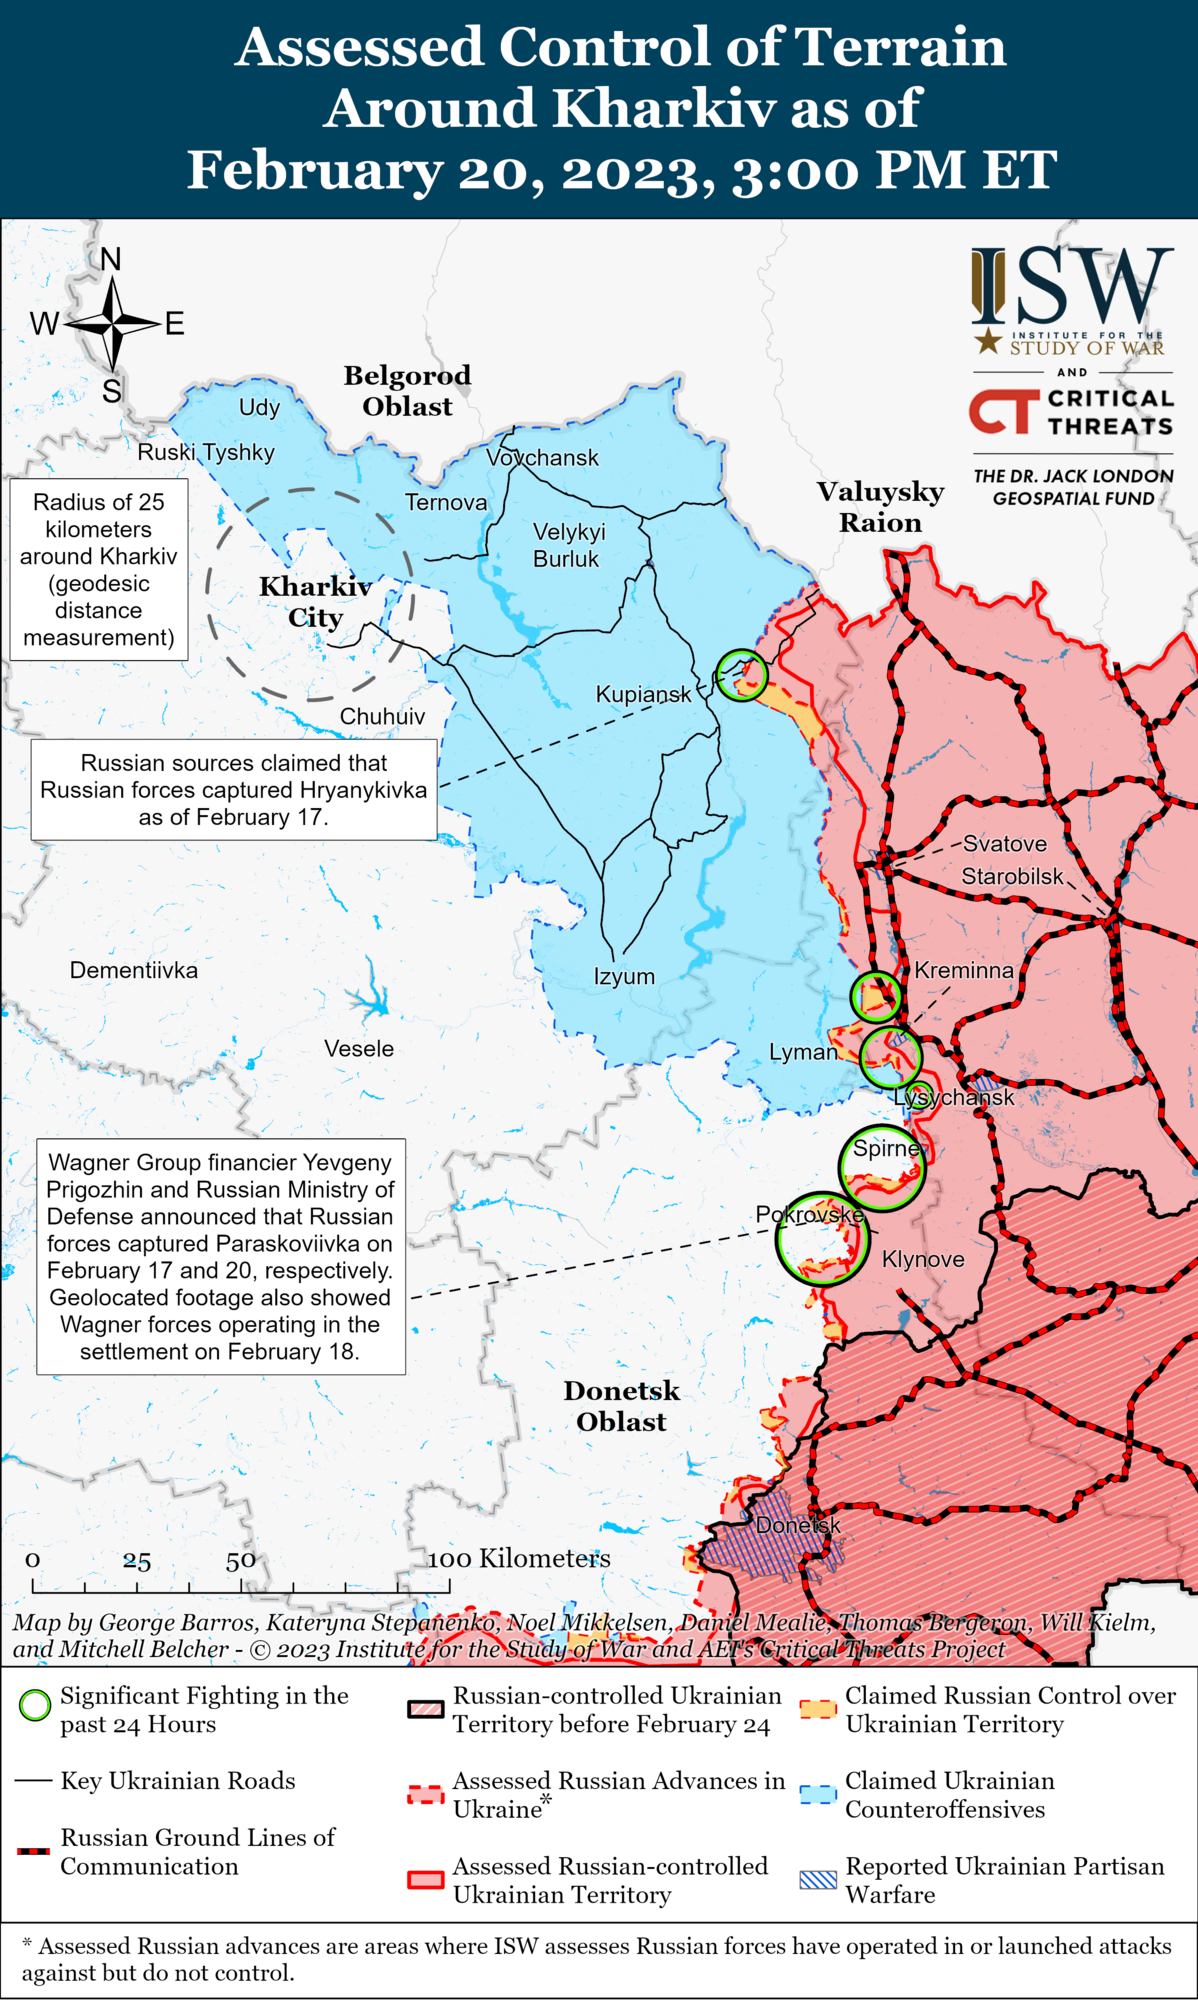 России не хватает сил на фронте, Украина может захватить инициативу: в ISW дали прогноз о ходе войны в 2023 году